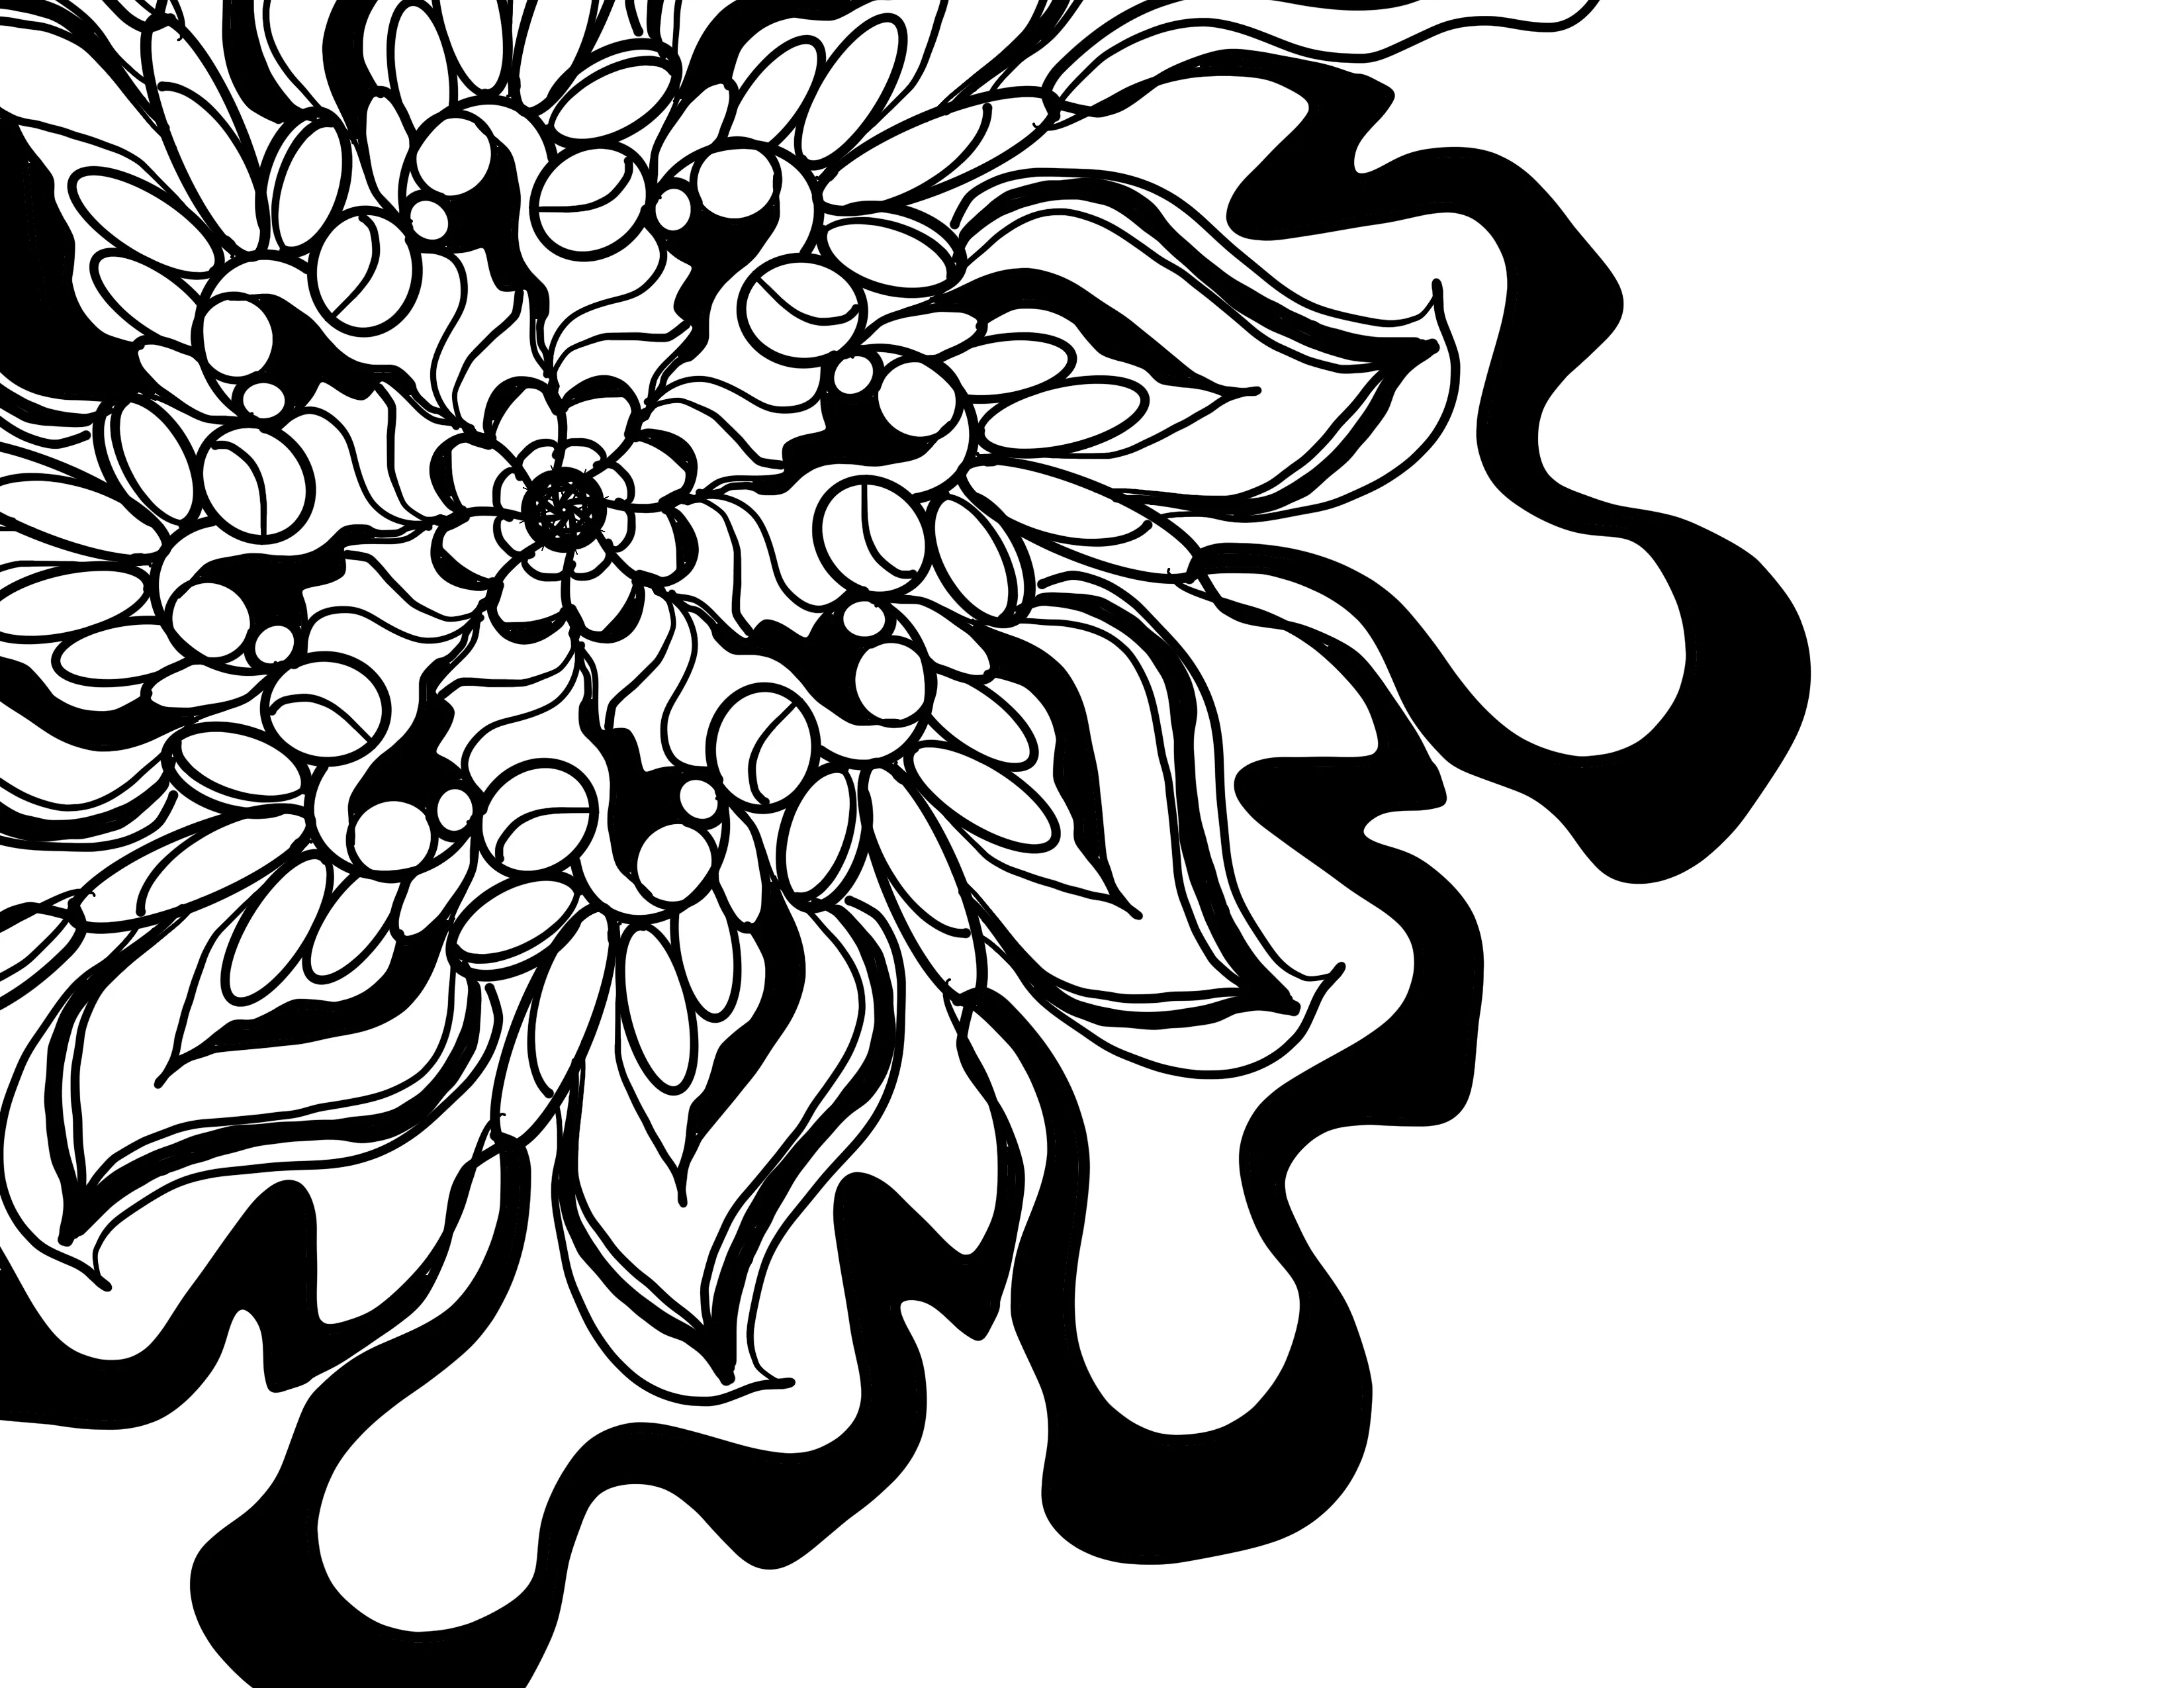 Joy in living color - chrysanthemum